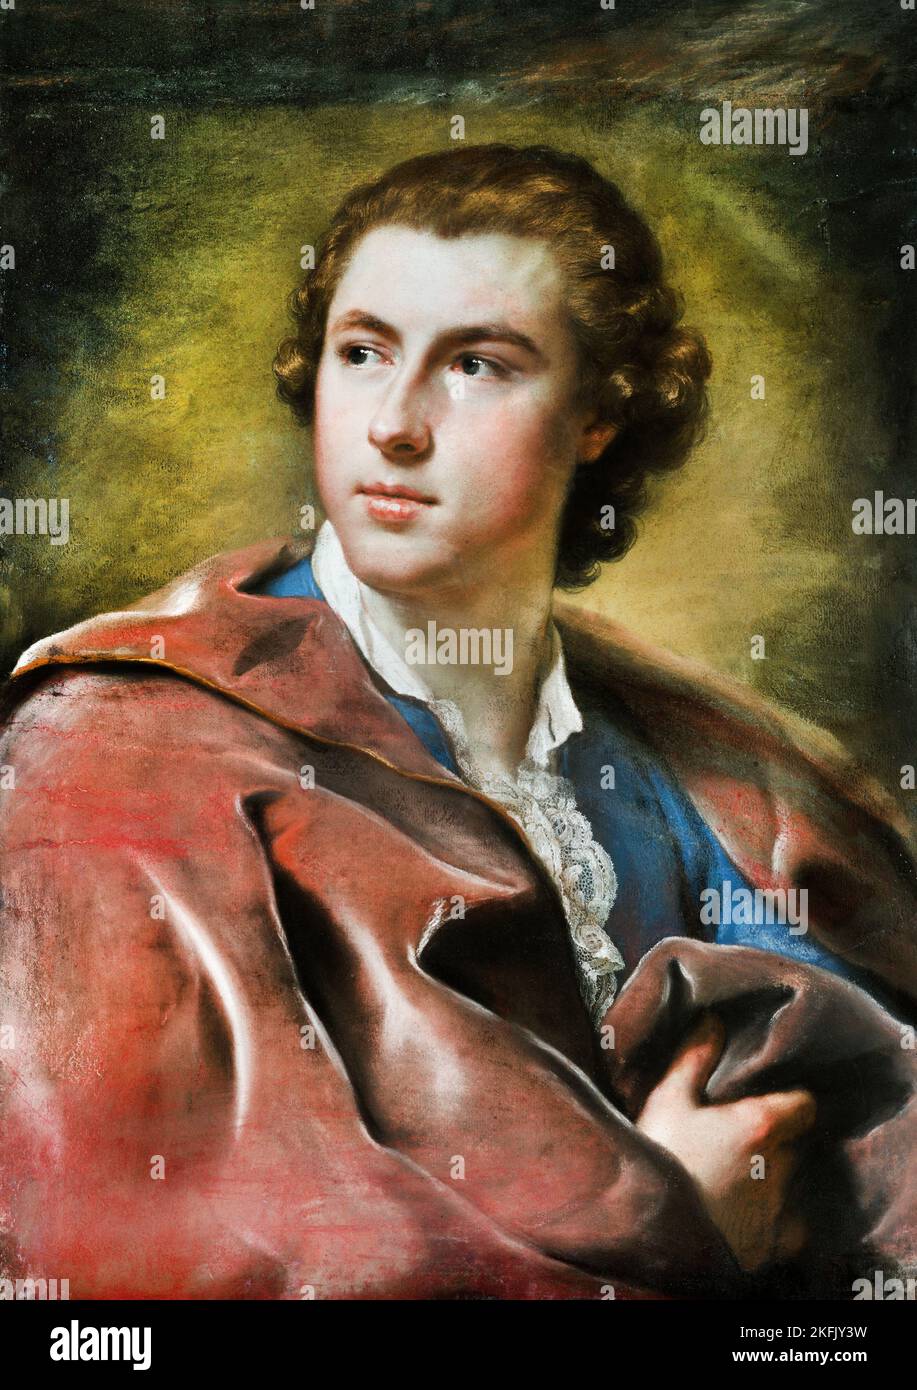 Anton Raphael Mengs ; Portrait de William Burton Conyngham ; Circa 1754-1755 ; huile sur toile ; Getty Center, Los Angeles, ÉTATS-UNIS. Banque D'Images